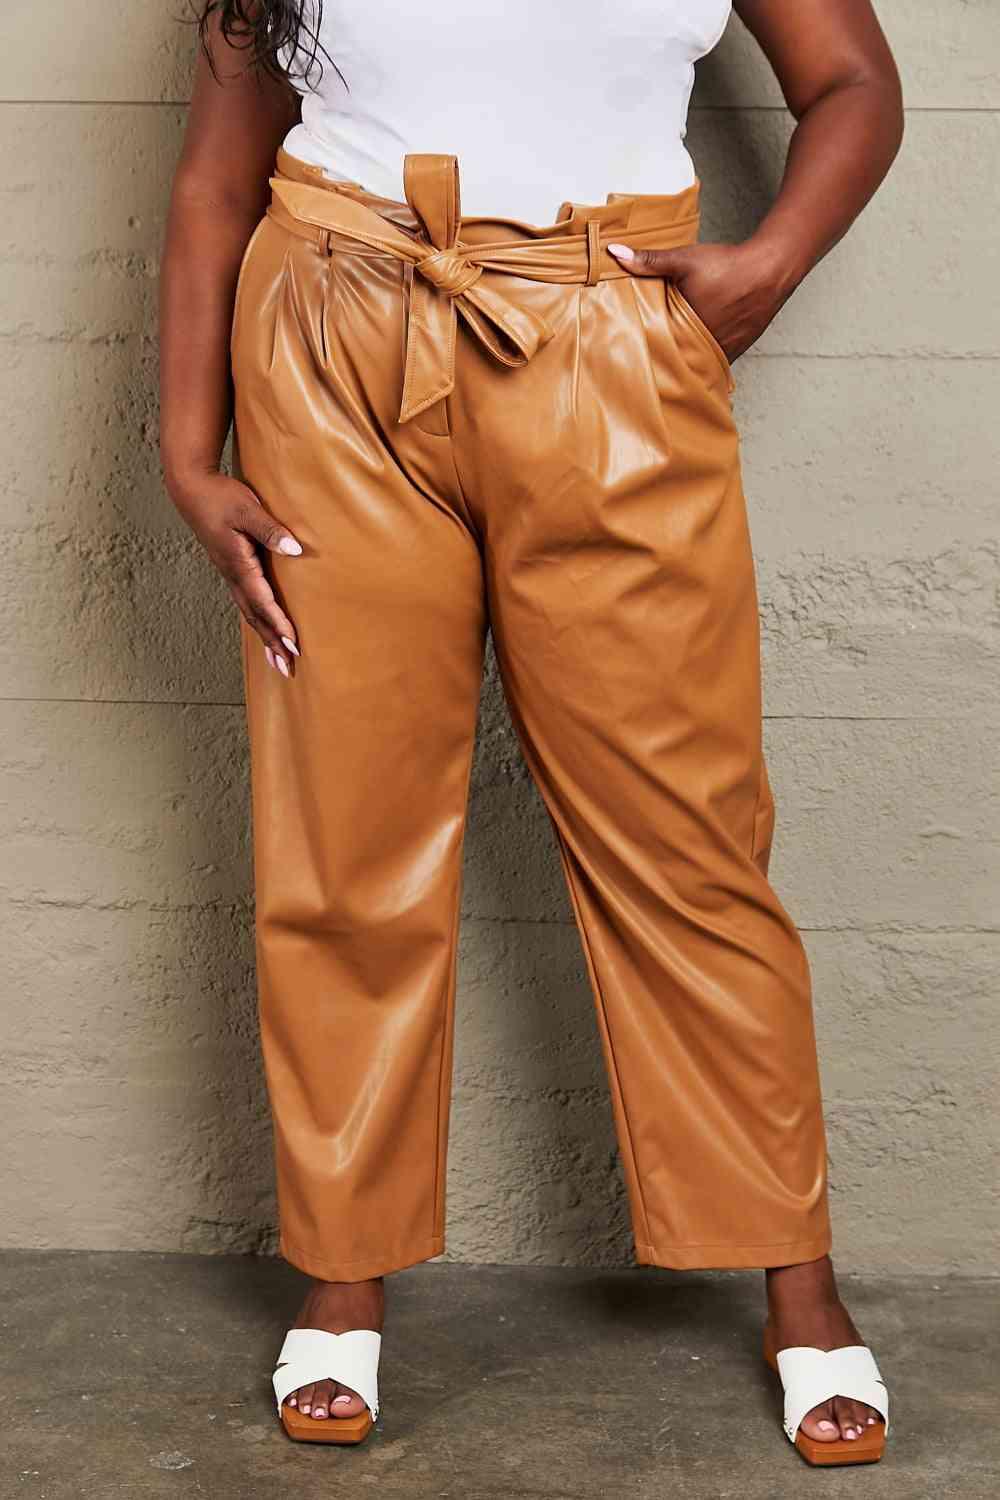 Bona Fide Fashion - Full Size Faux Leather Paperbag Waist Pants - Women Fashion - Bona Fide Fashion